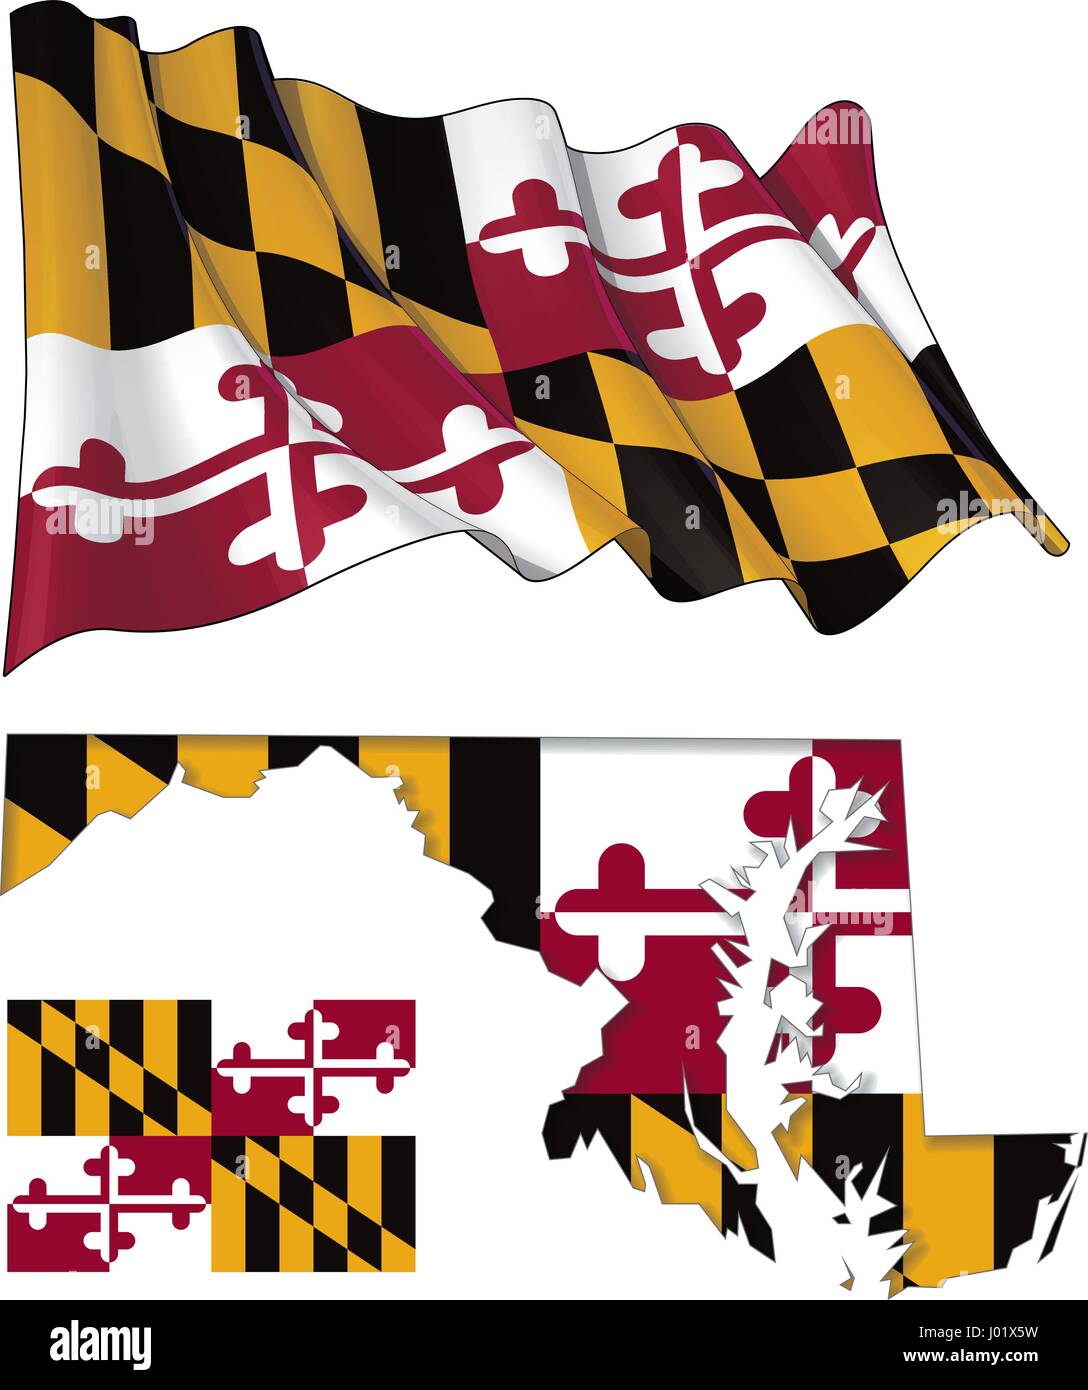 Illustrations vectorielles du Maryland, agitant le drapeau et d'une télévision, et une carte avec le drapeau d'insérer et d'ombre intérieure. Tous les éléments d'une manière ordonnée sur la couche bien décrite Illustration de Vecteur